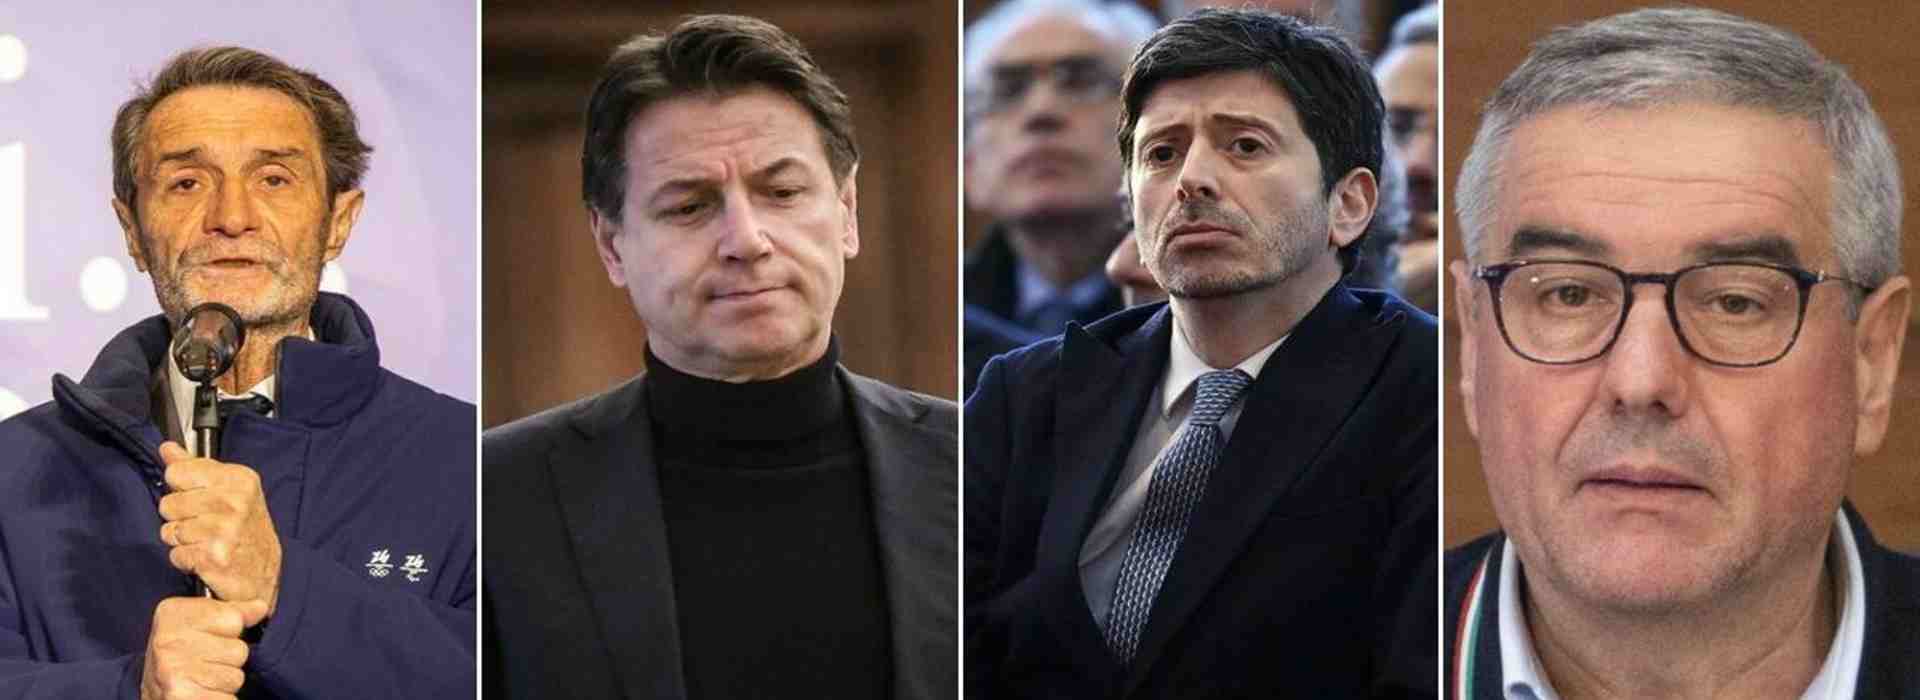 Inchiesta Covid a Bergamo: le accuse a Conte, Speranza, Fontana